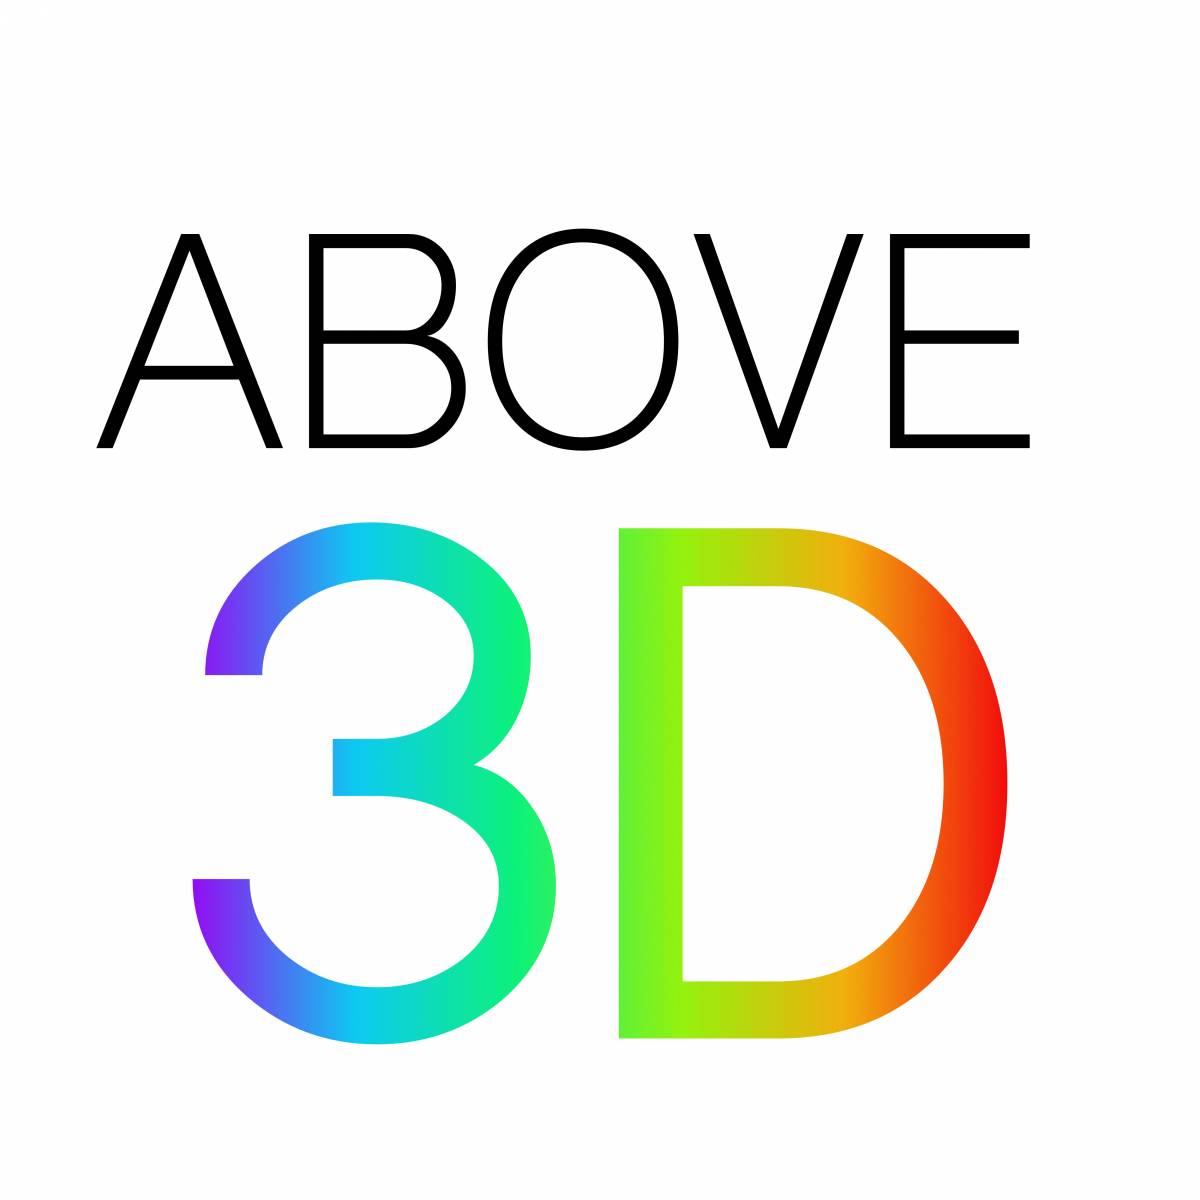 ABOVE3D - Figueira da Foz - Web Design